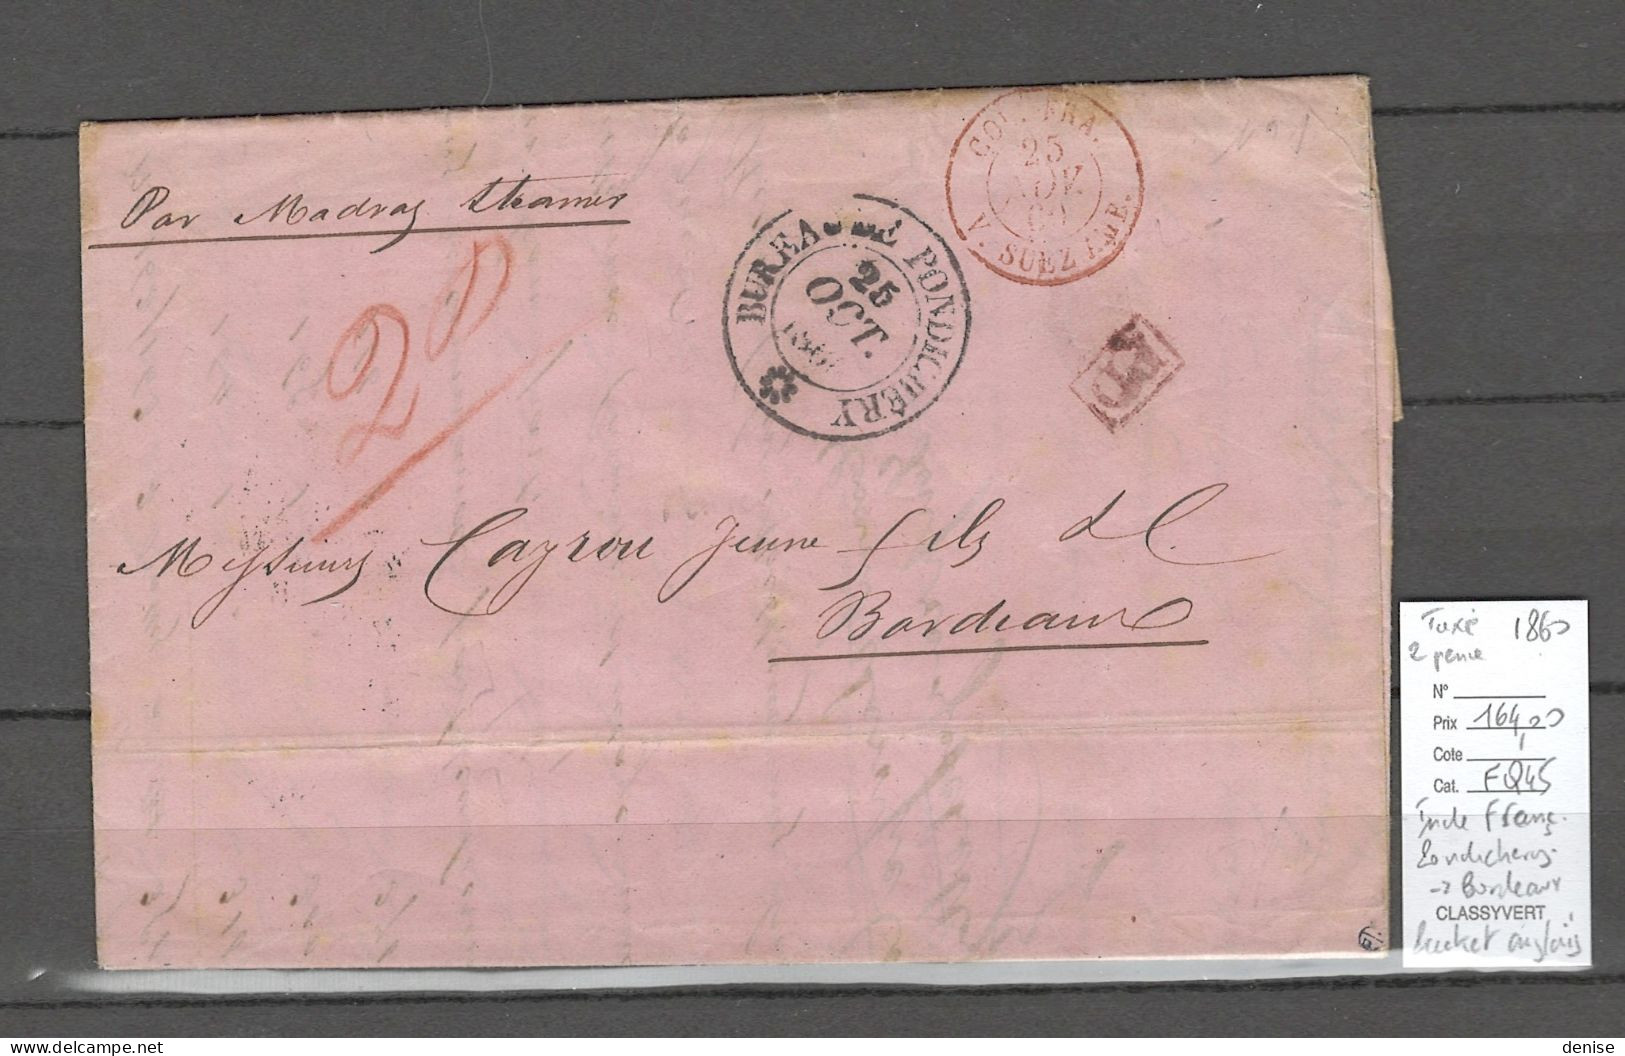 Inde Française - Lettre De Pondichery 1860 - Pour Bordeaux Via Packet Anglais -  Madras Et Suez - Briefe U. Dokumente